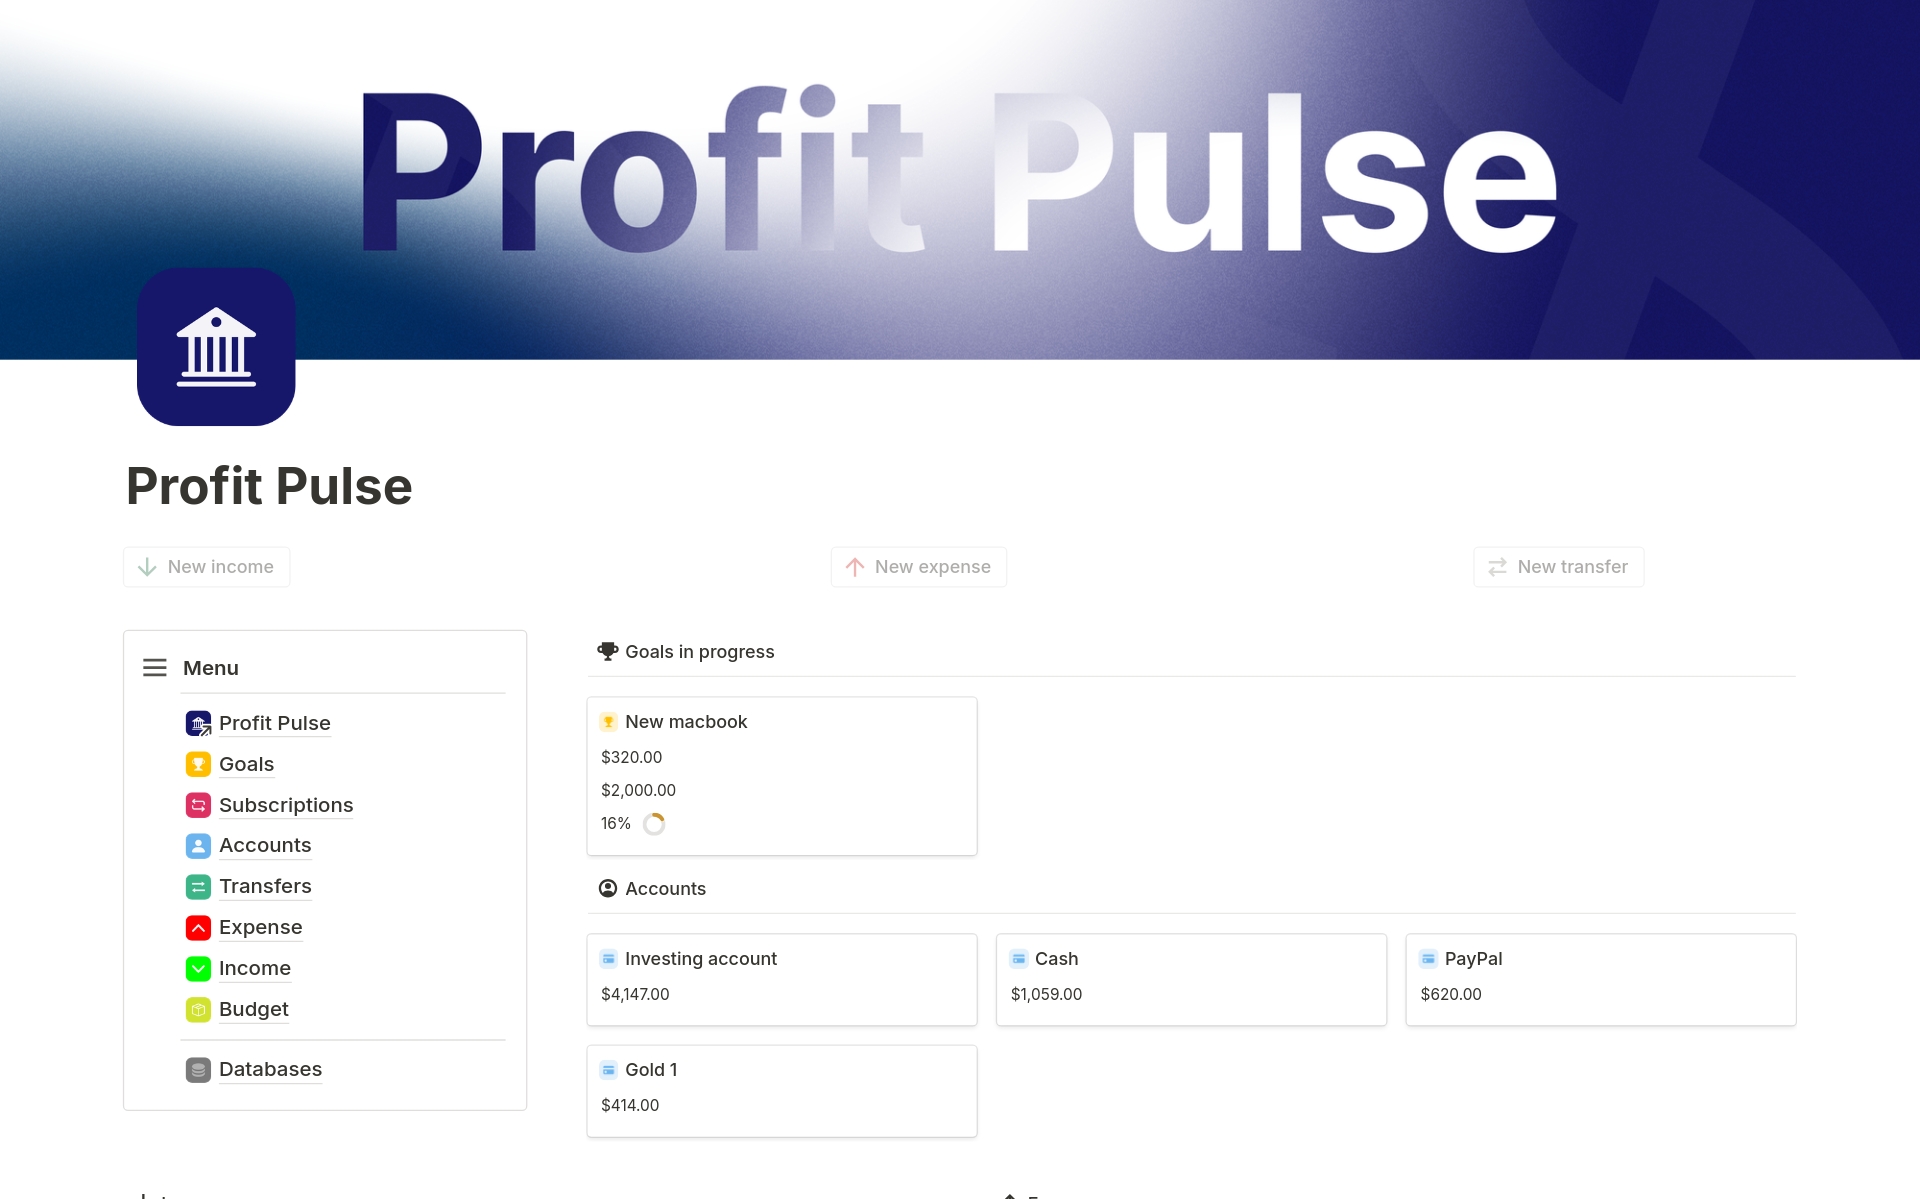 Vista previa de una plantilla para Profit Pulse